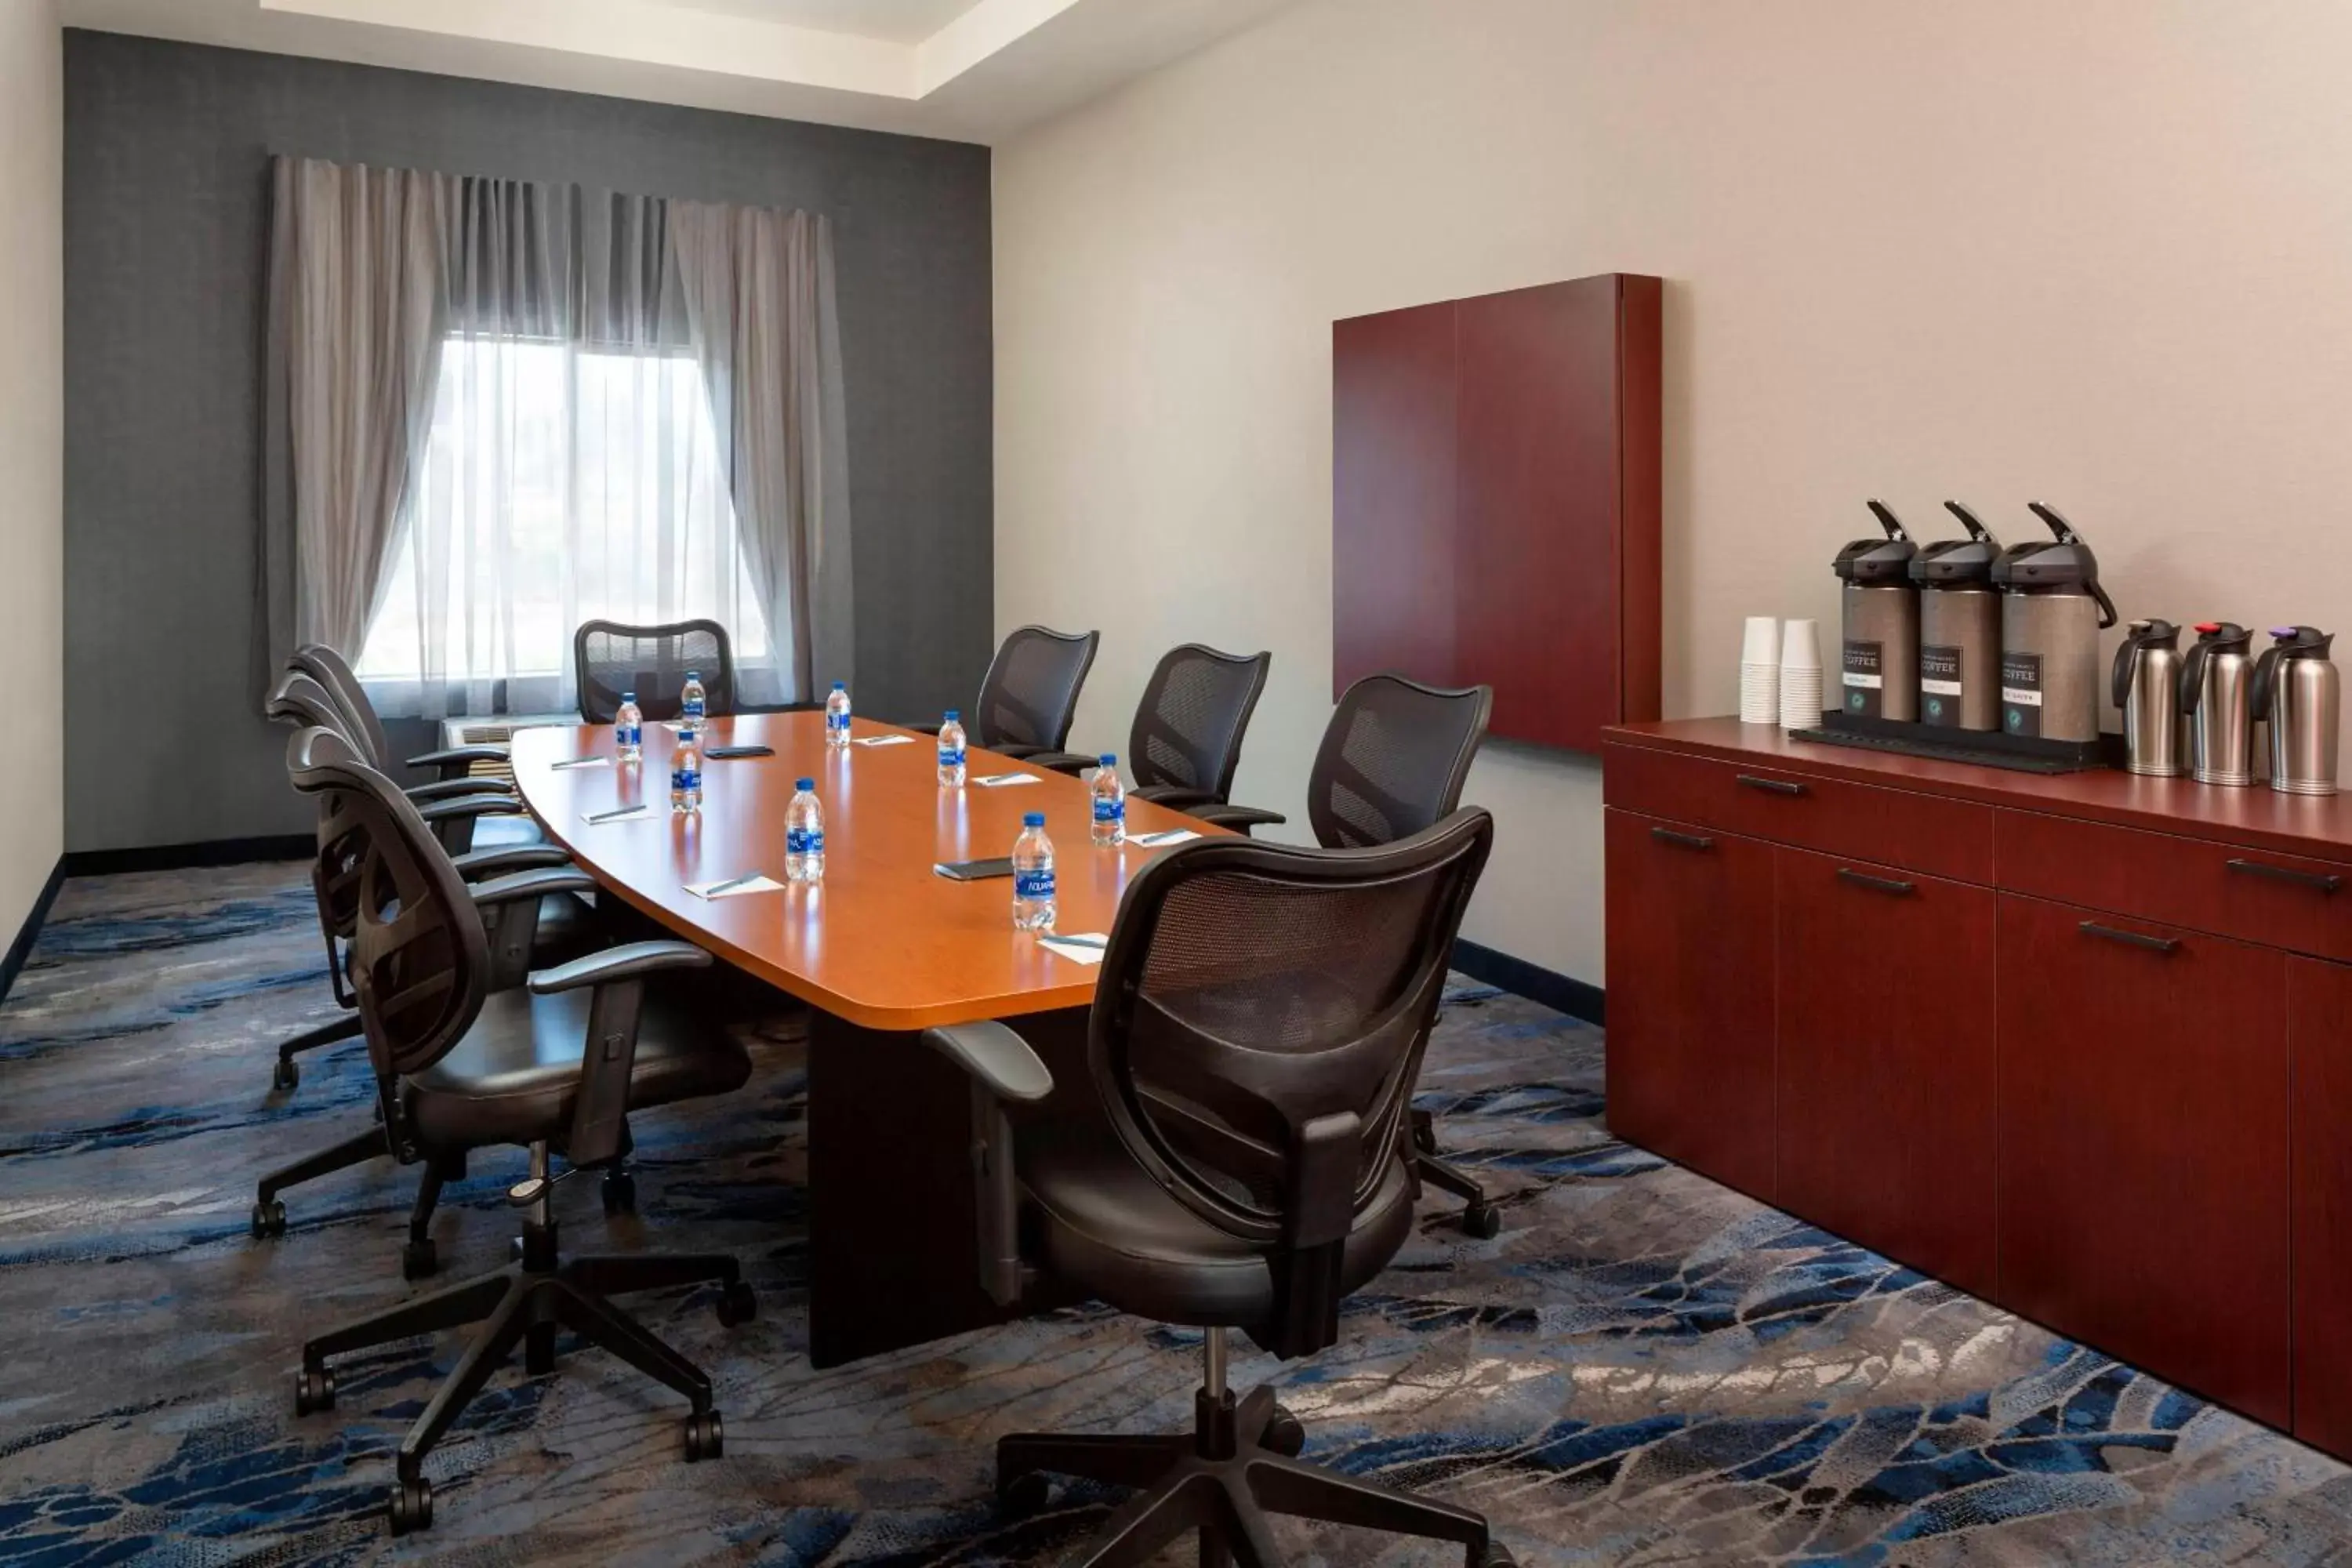 Meeting/conference room in Fairfield Inn & Suites by Marriott Selma Kingsburg